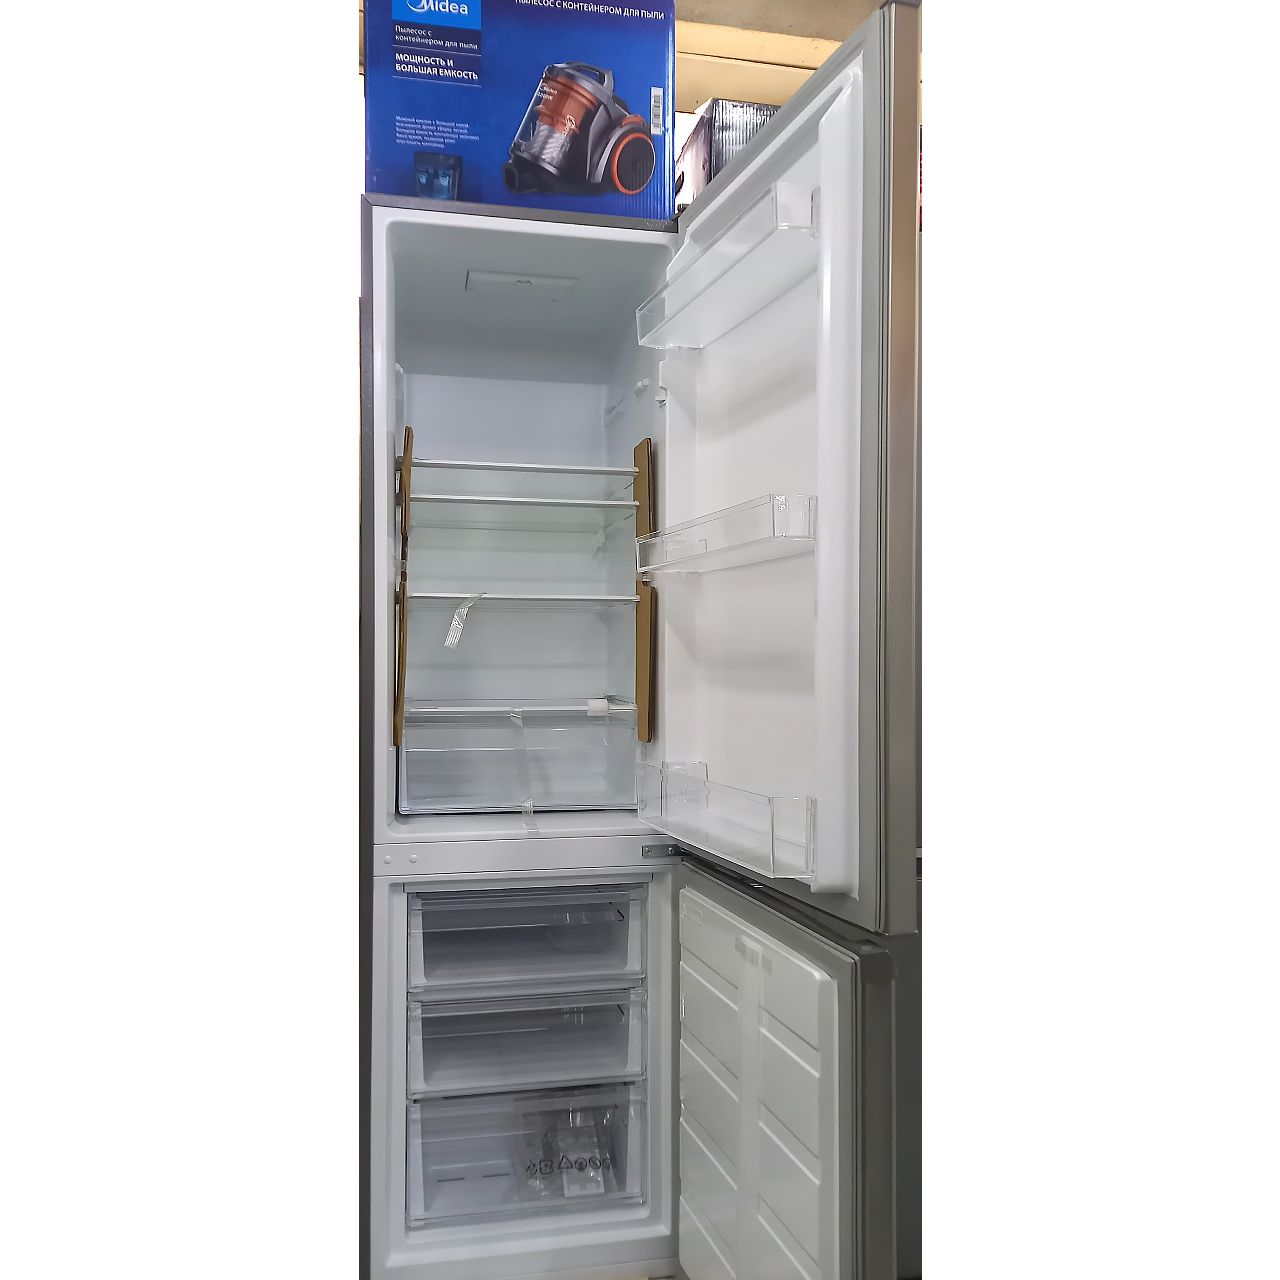 Холодильник двухкамерный Blesk 259 литров